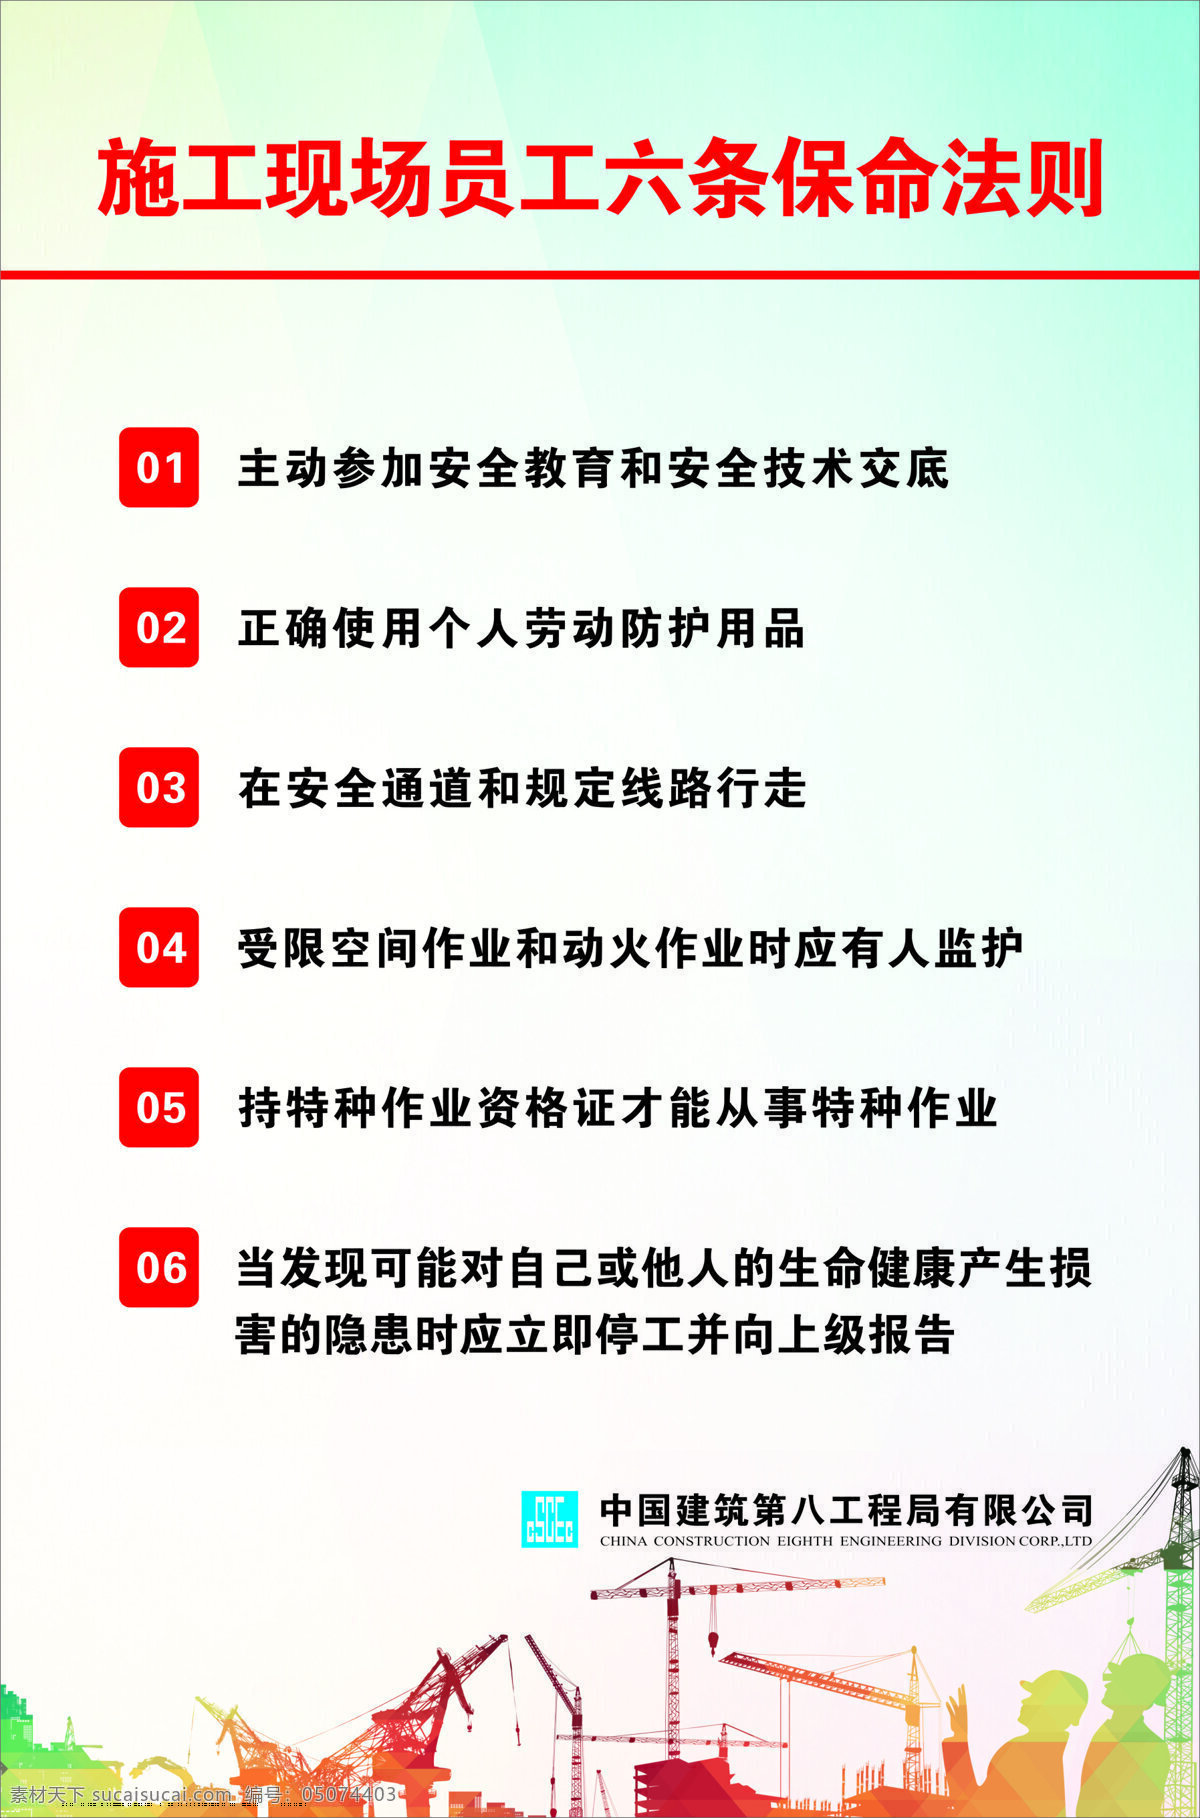 施工 现场 员工 六 条 保命 法则 施工现场 员工六条 保命法则 展板 中建 中国建筑 工地